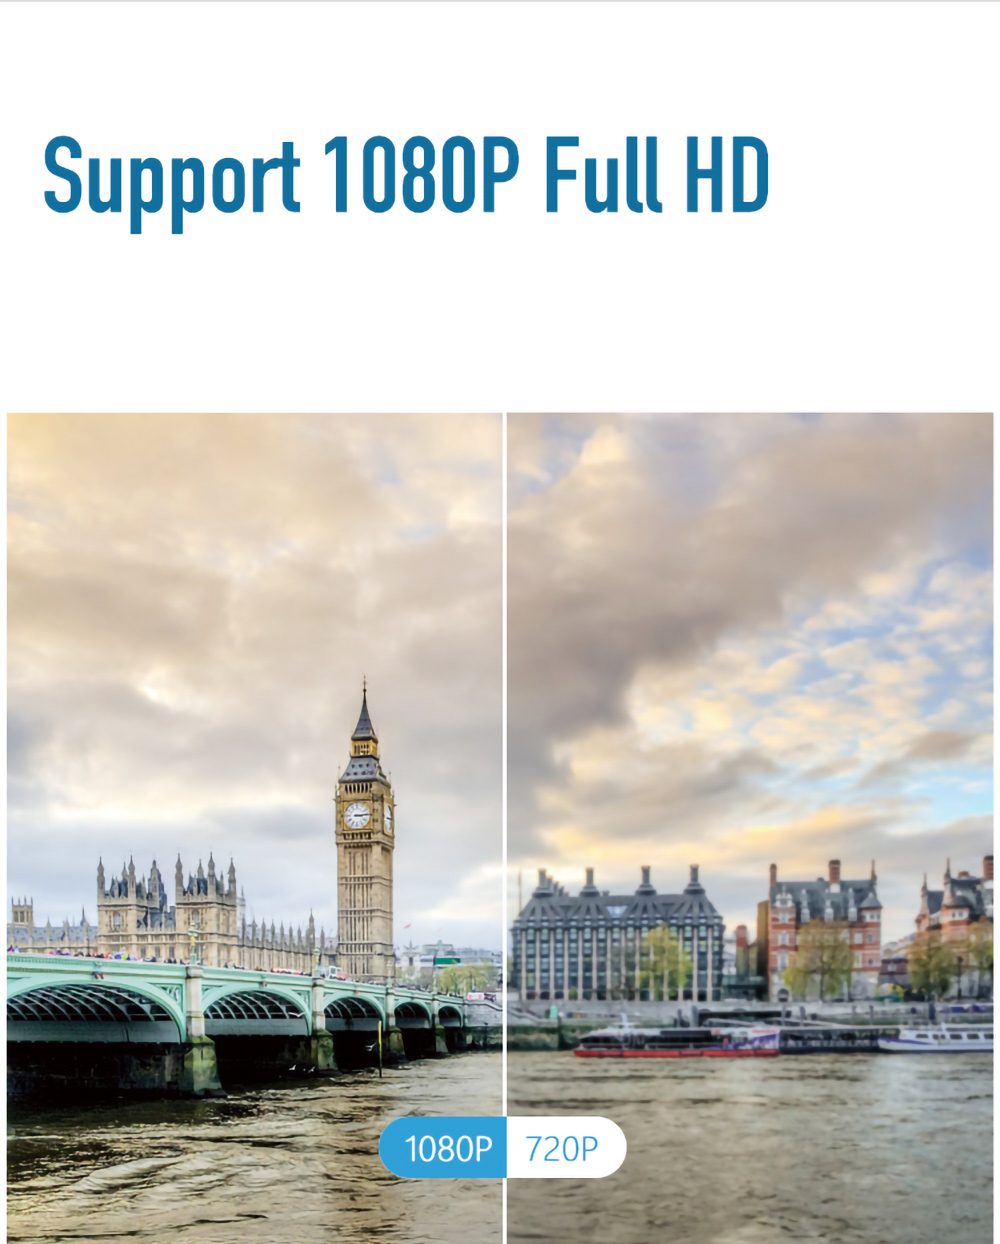 Lenovo LXP200 بروجيكتور ذكي محمول للمنزل والمكتب يدعم دقة 1080 بكسل 200 لومن ANSI تصحيح الانحراف